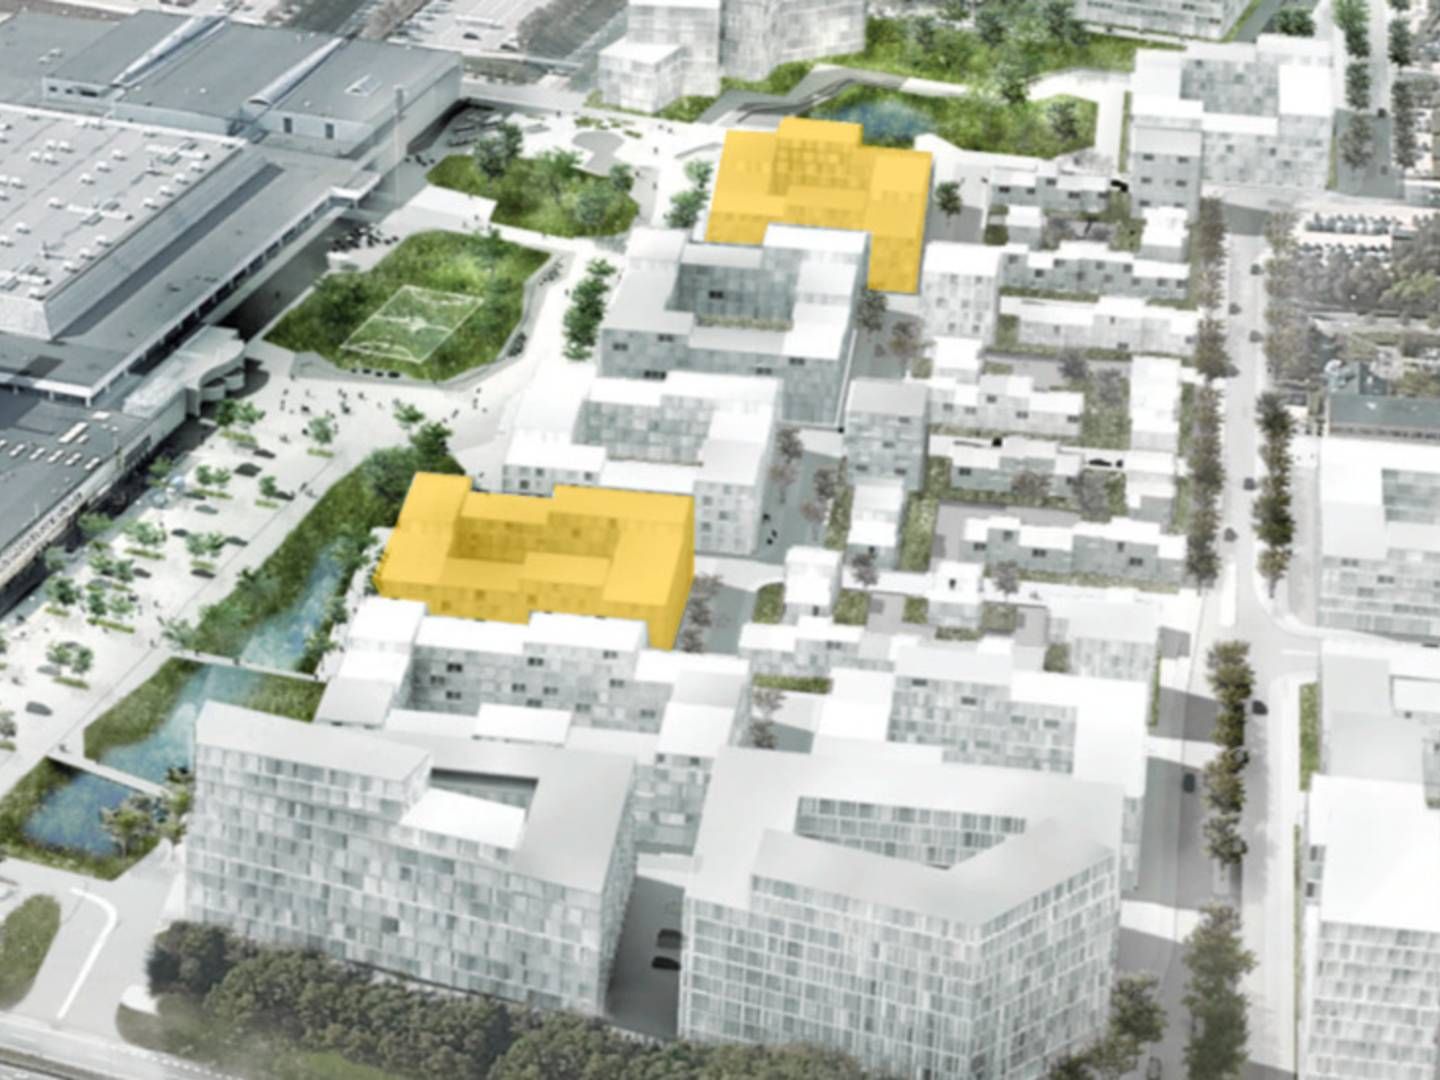 Med de to nye byggefelter, som er vist med gult, har Balder gang i at bygge ca. 1000 lejligheder i hovedstadsområdet. | Foto: Balder PR